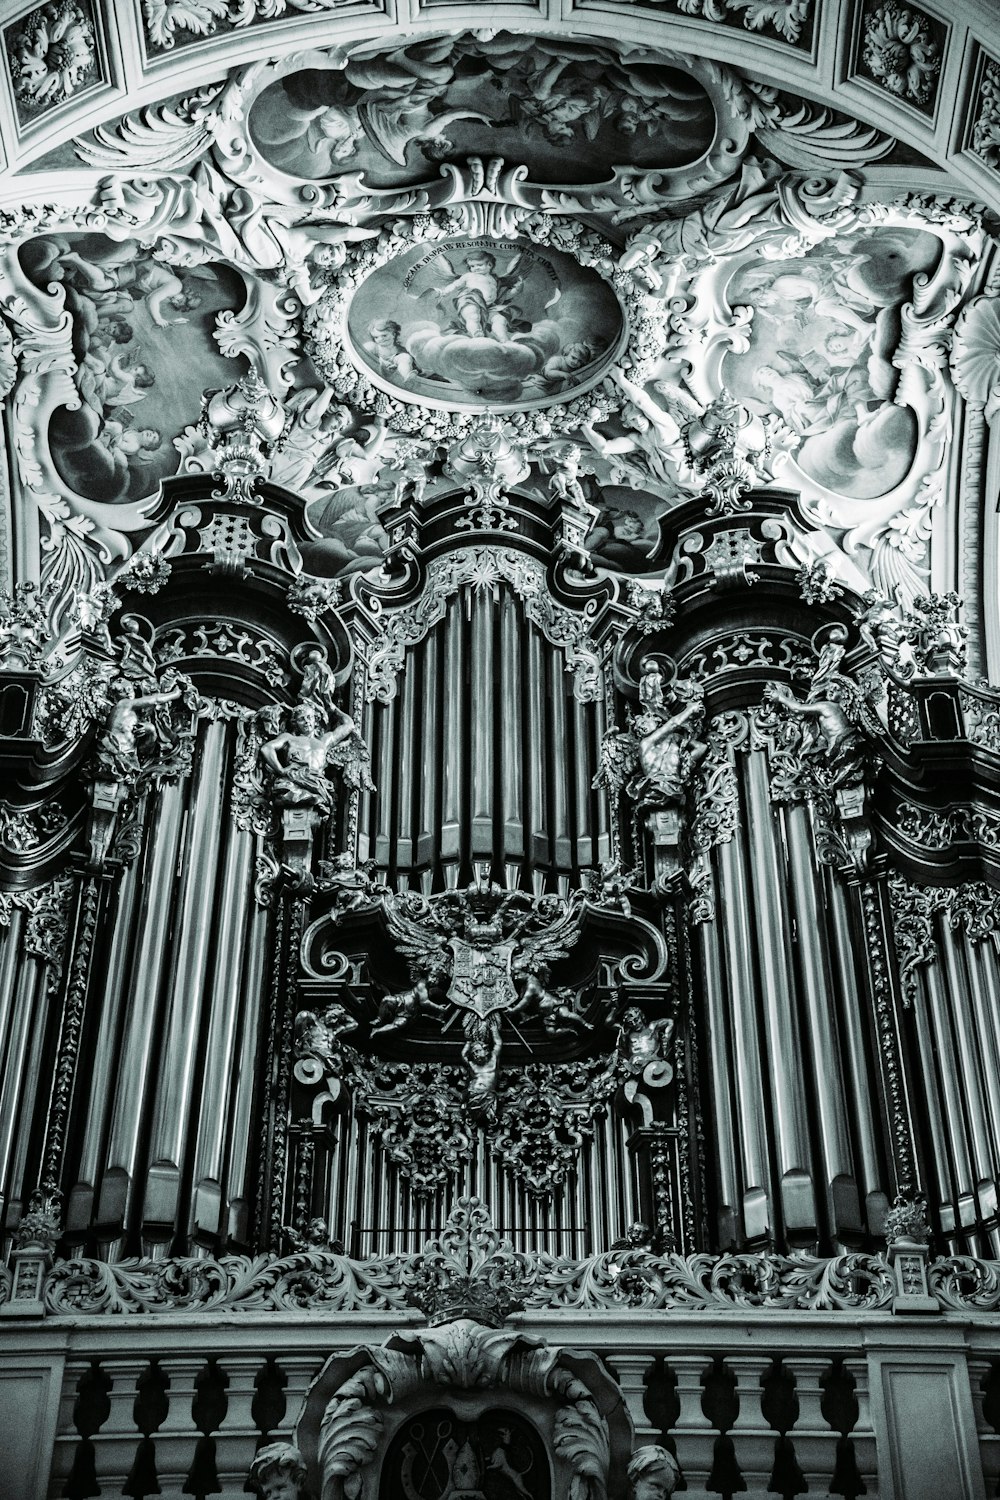 an ornate pipe organ in a church